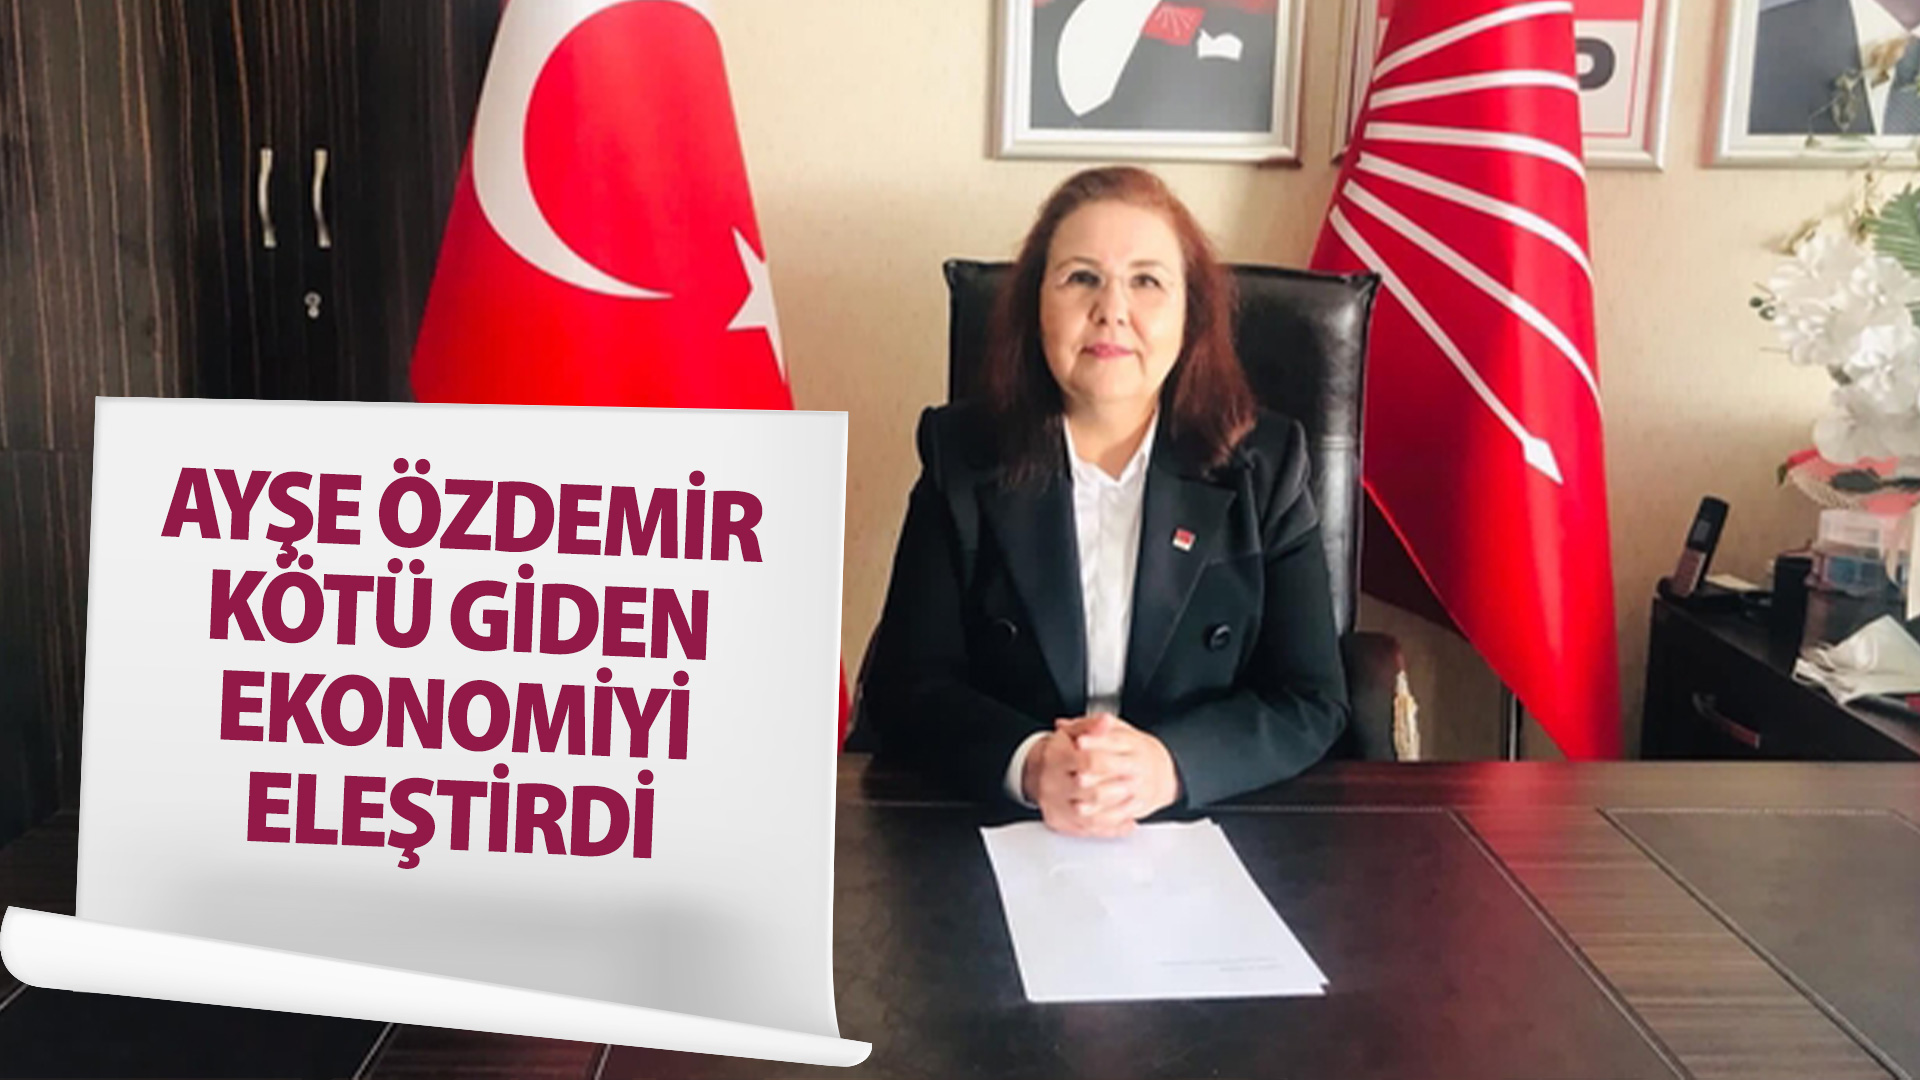 Başkan Özdemir, Kötü giden ekonomiyi eleştirdi